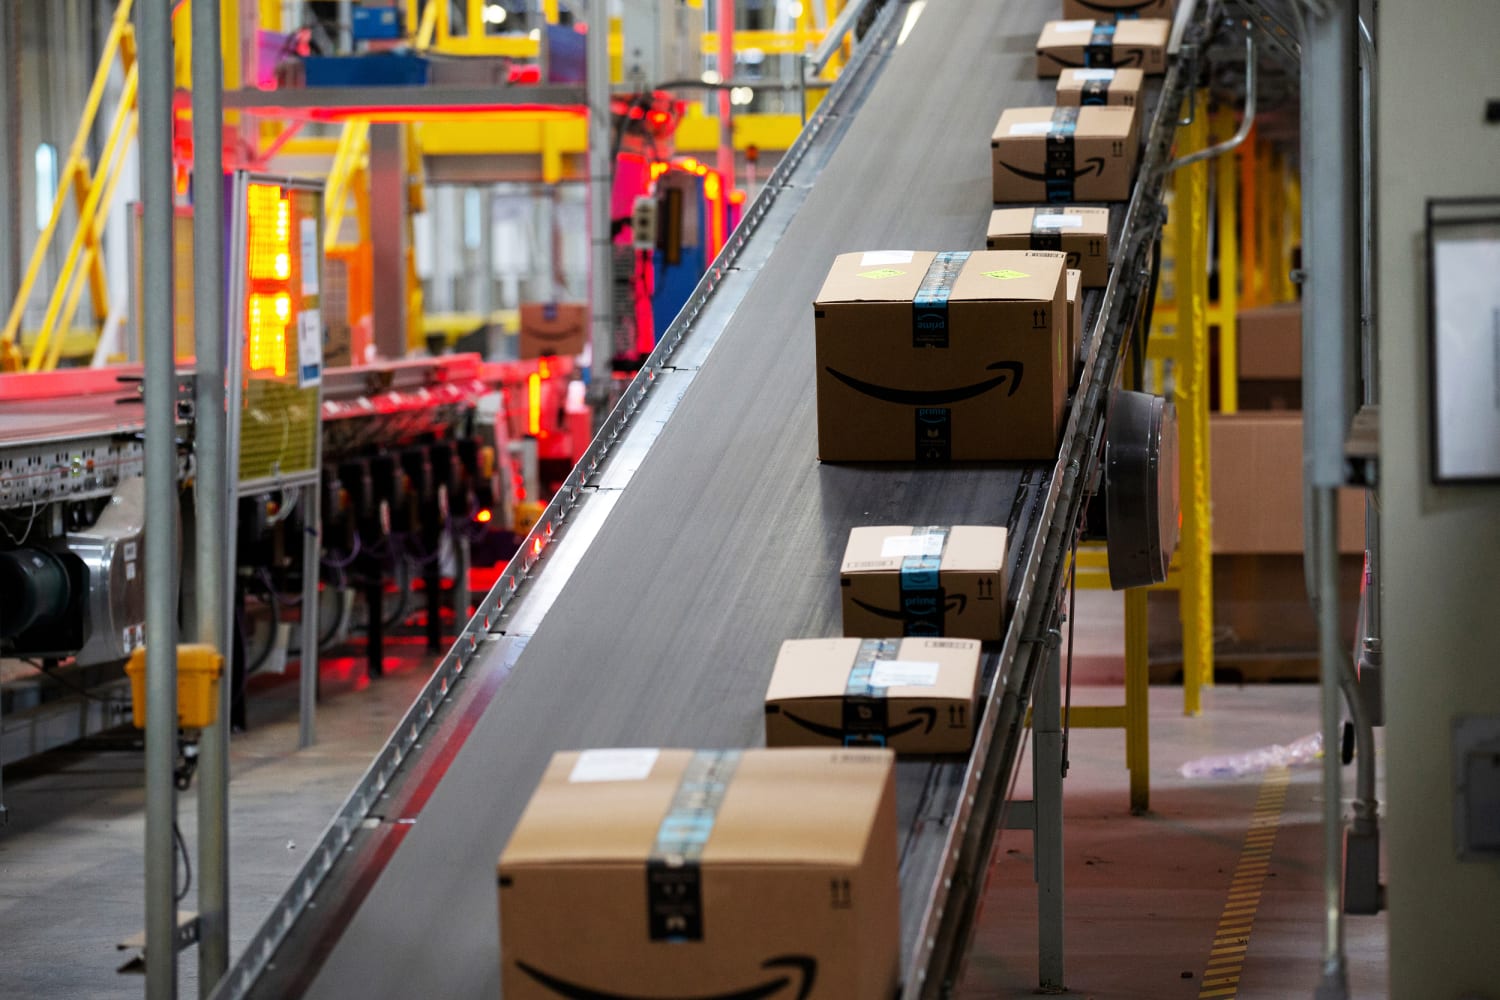 Does Amazon Warehouse Drug Test?